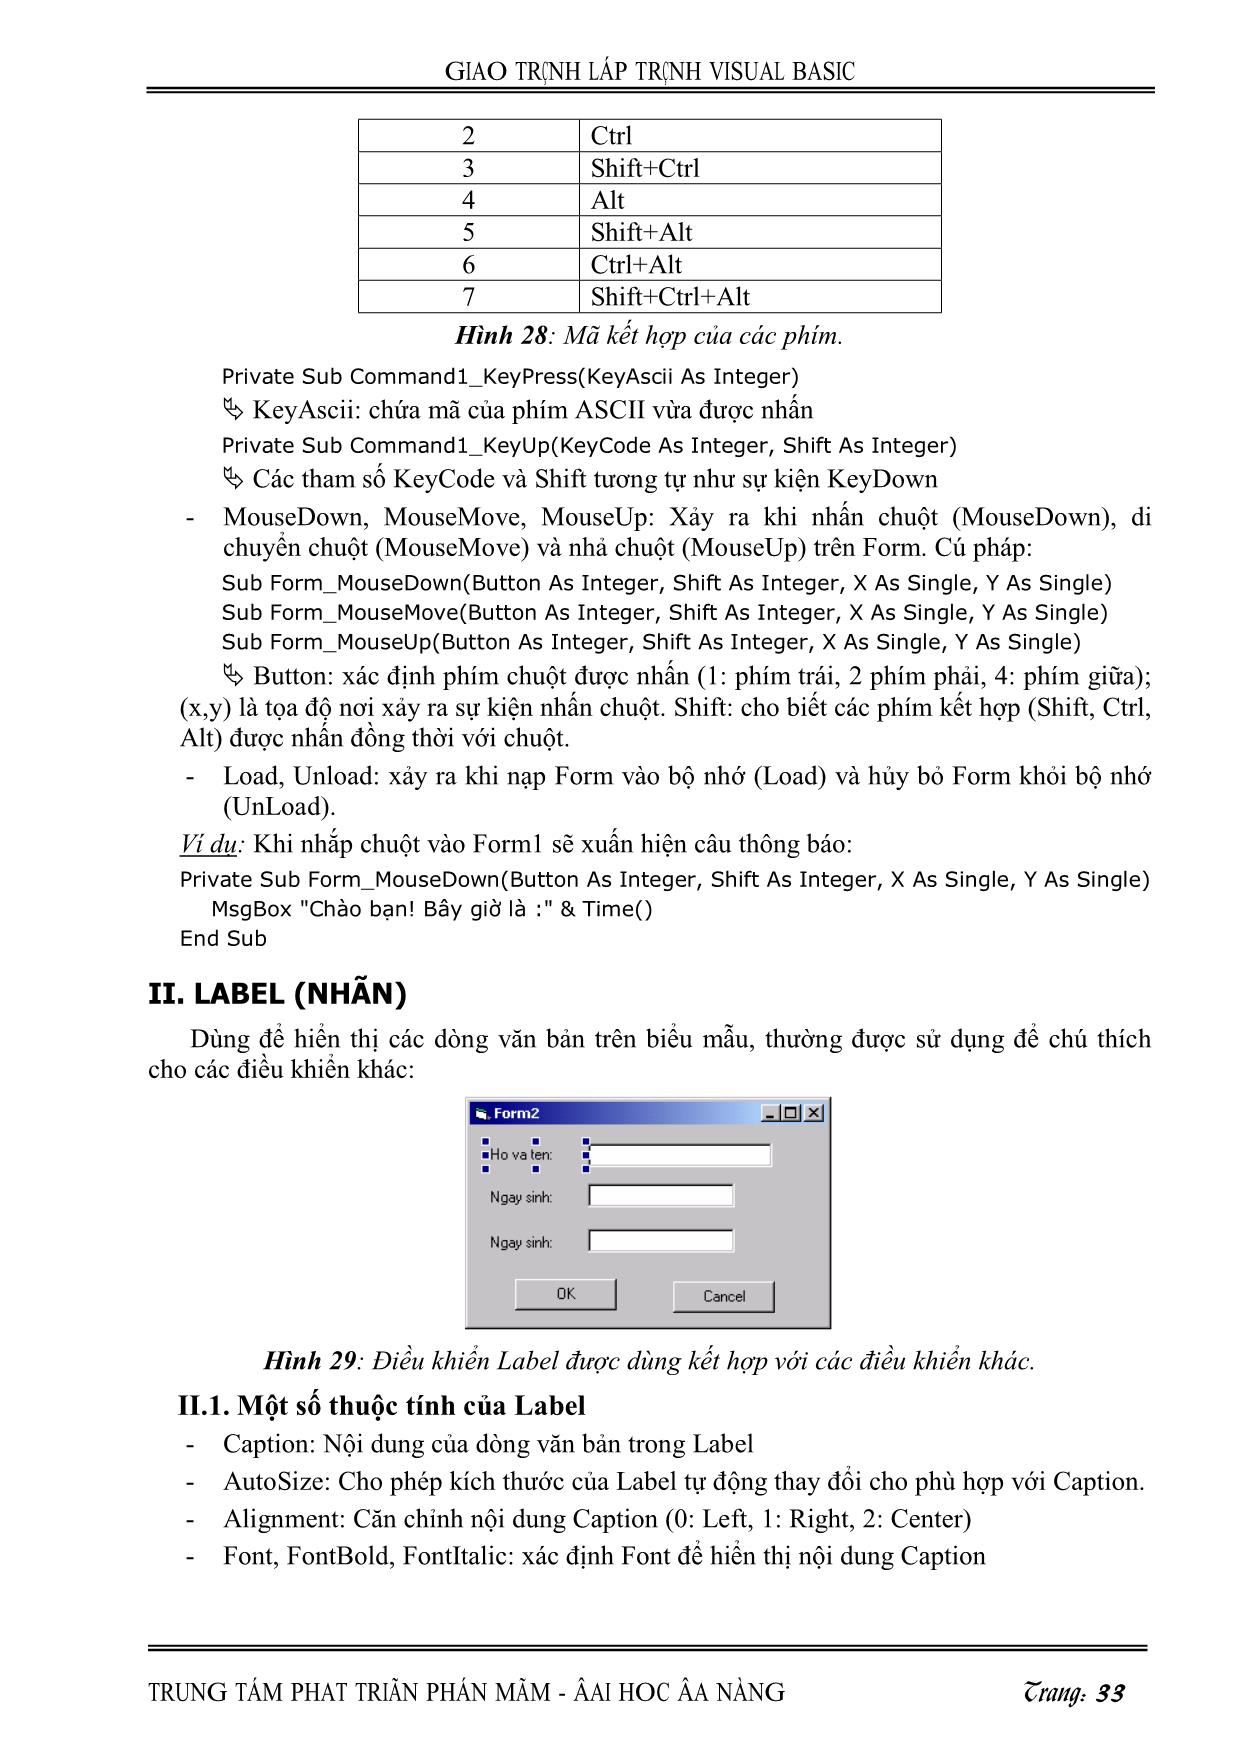 Giáo trình Lập trình Visual Basic (Phần 2) trang 3